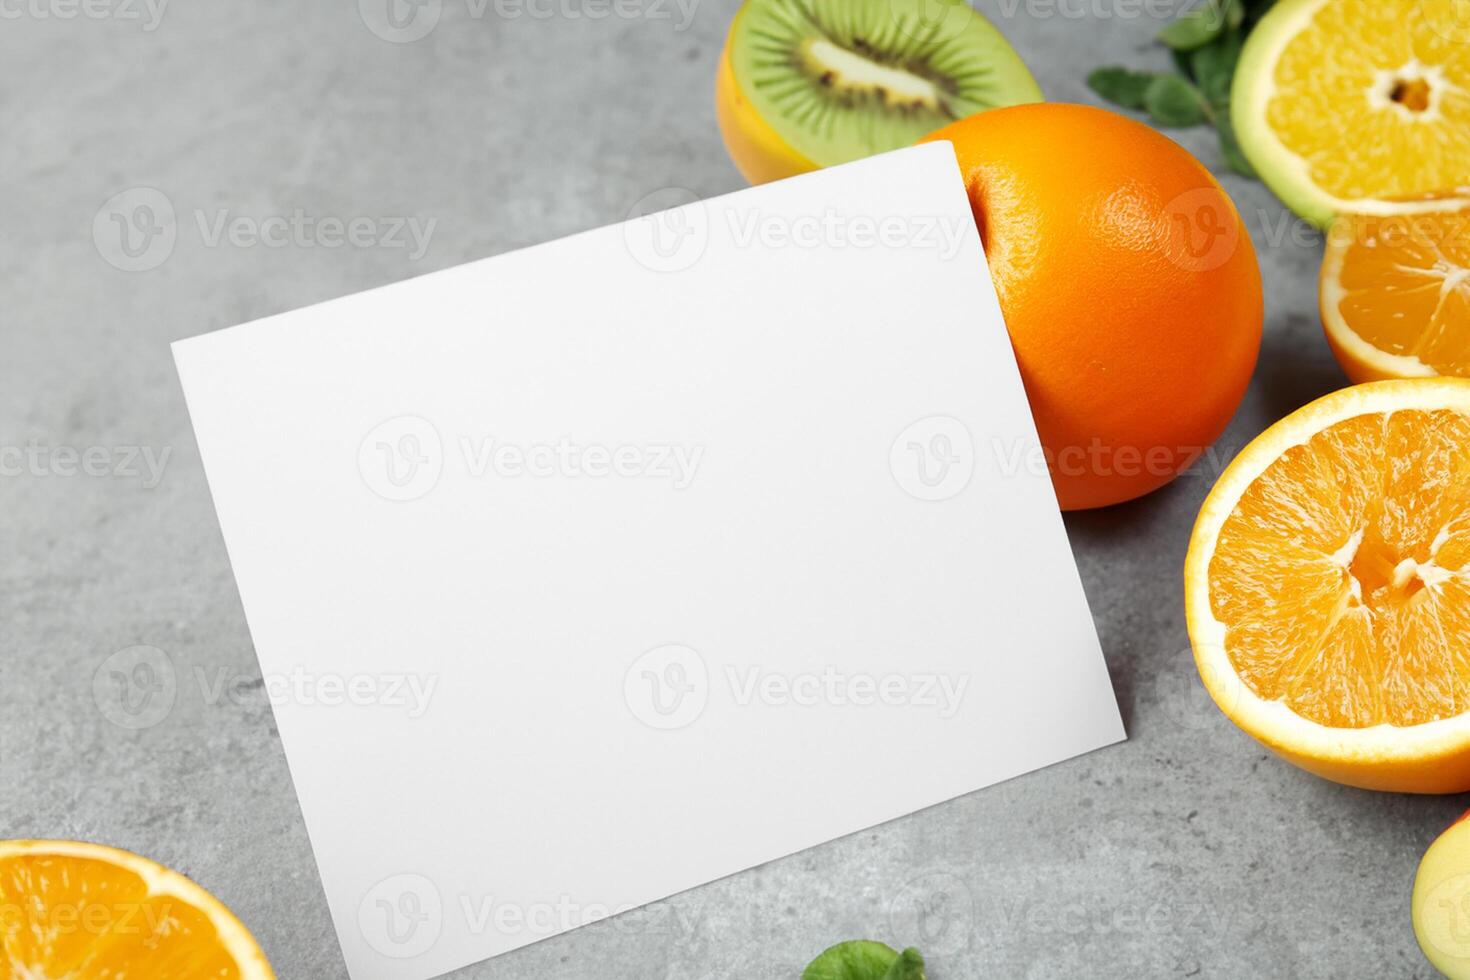 kaart en wit papier mockup geharmoniseerd met vers fruit, bouwen een zichtbaar symfonie van listig ontwerp en culinaire vreugde, waar gezond ingrediënten samenvoegen in een feest van levendig beelden foto